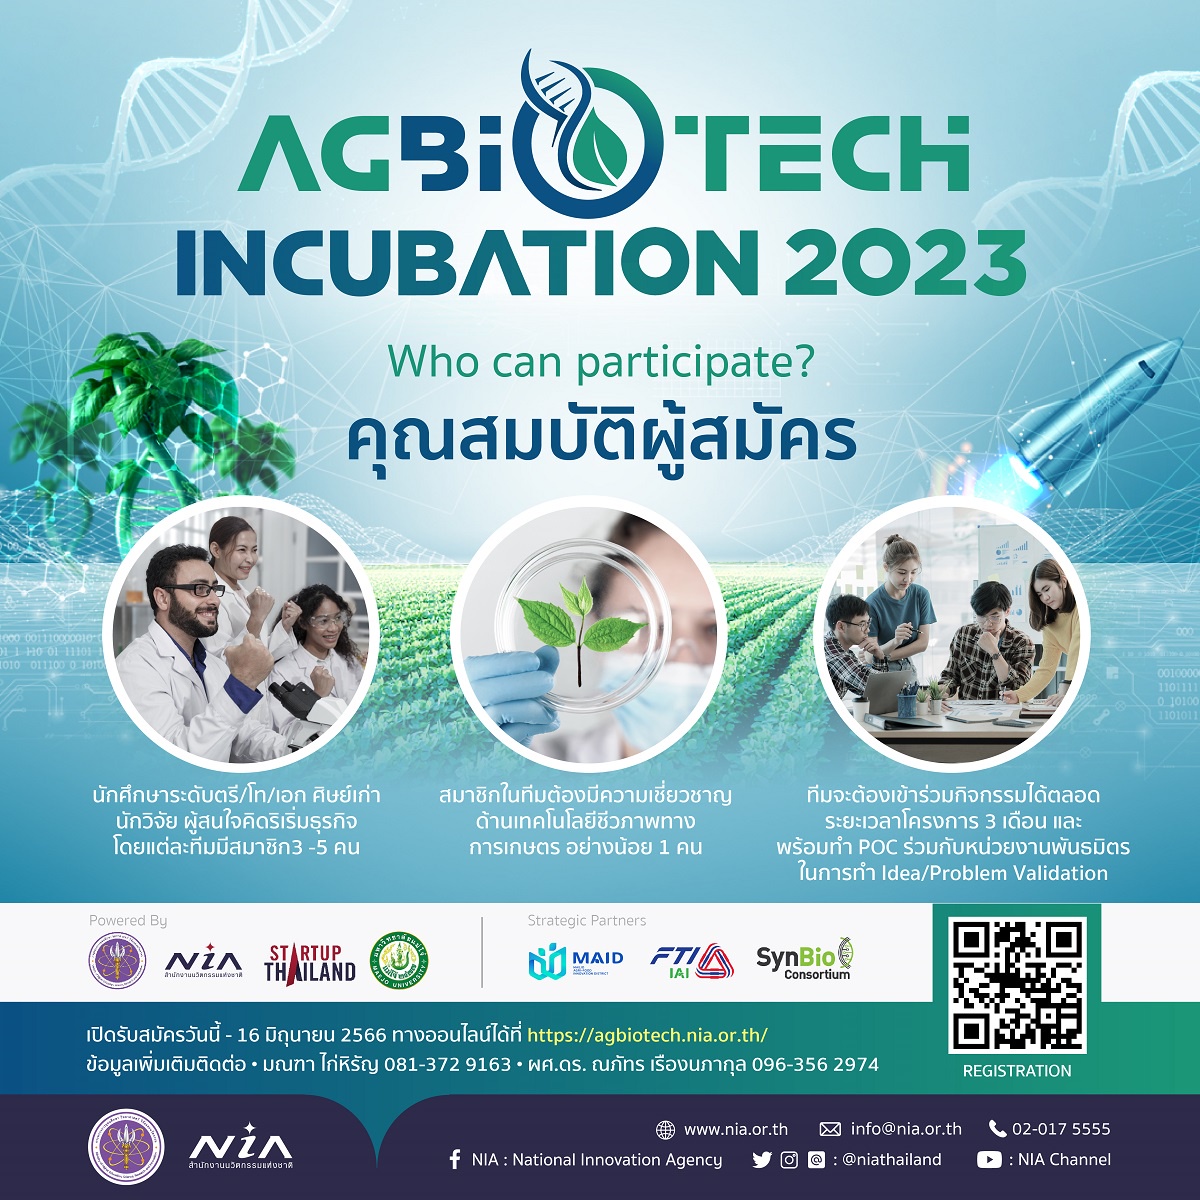 NIA ร่วมกับม. แม่โจ้เปิดรับสมัครทีมสตาร์ทอัพเข้าร่วมโครงการ AgBioTech Incubation 2023 เปลี่ยนไอเดียเพื่อต่อยอดเป็นธุรกิจ